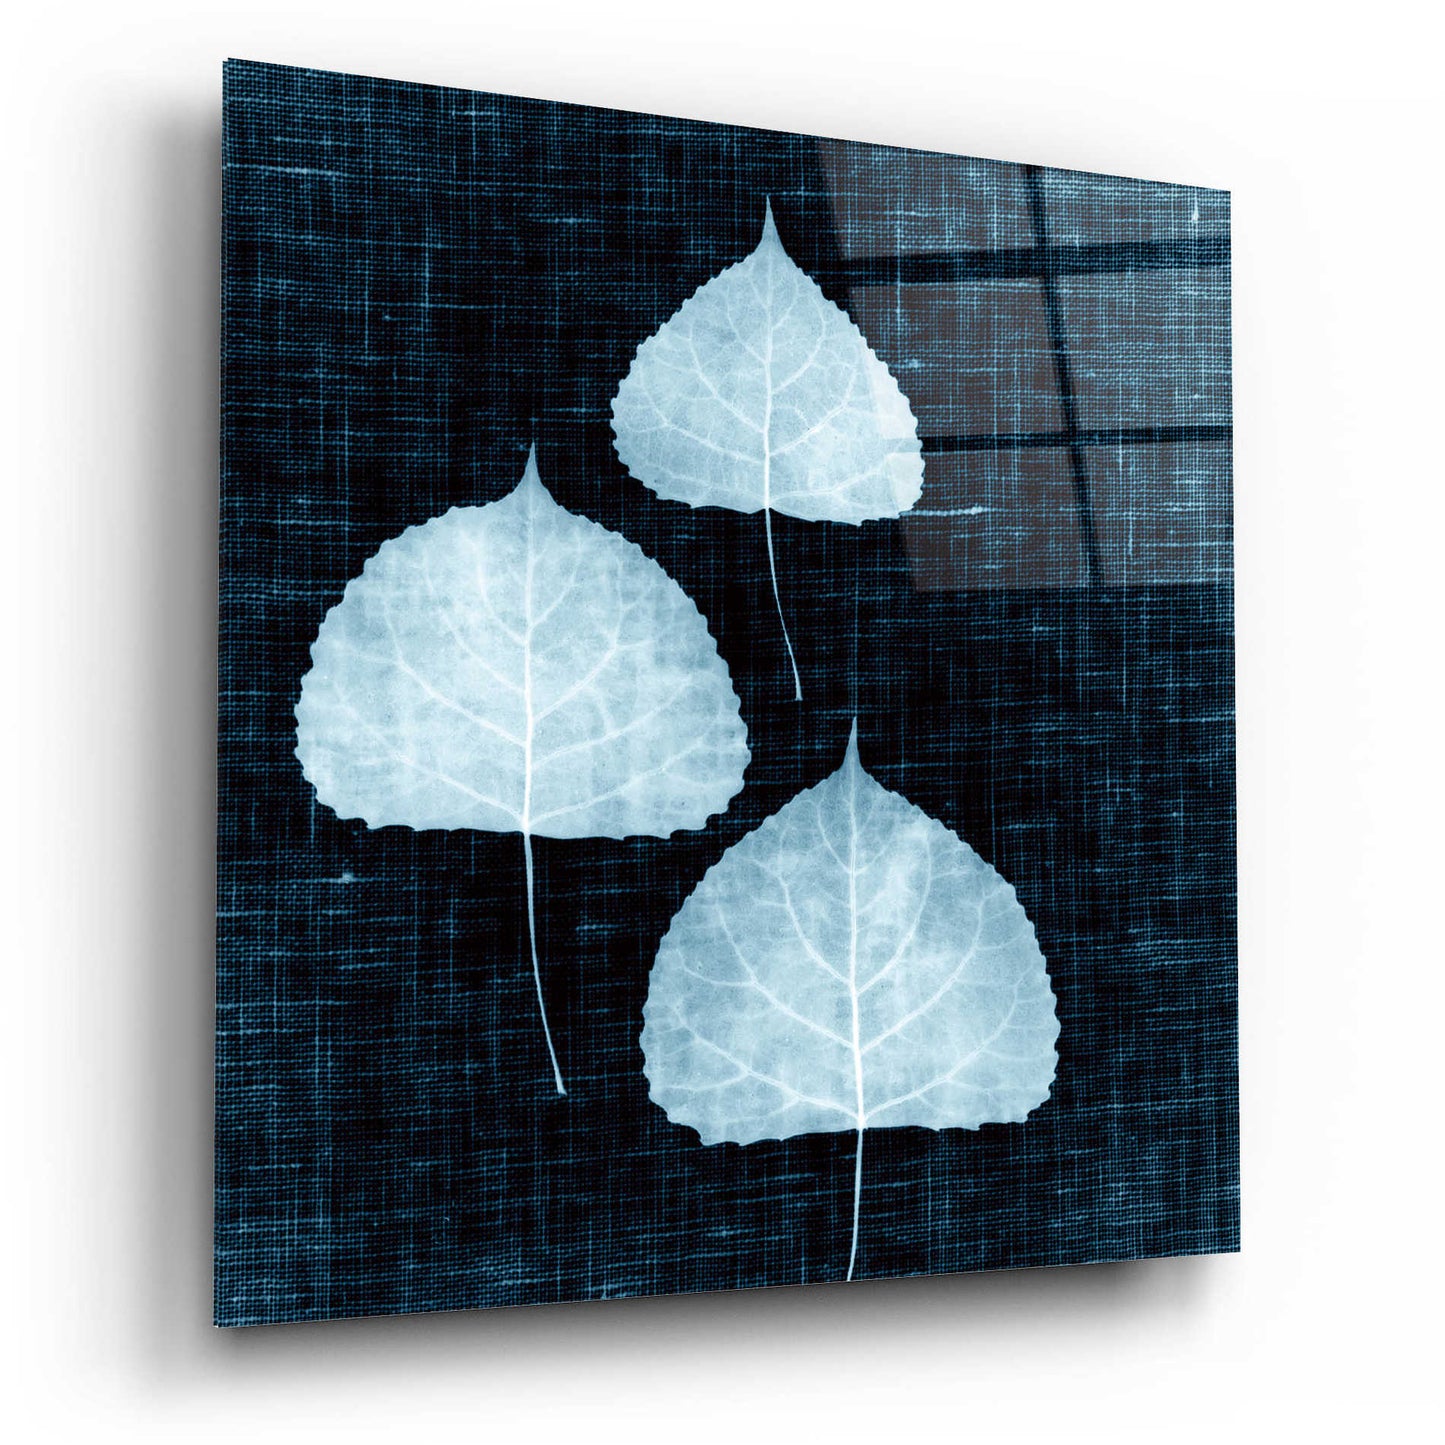 Epic Art 'Leaves on Linen III' by Debra Van Swearingen, Acrylic Glass Wall Art,12x12